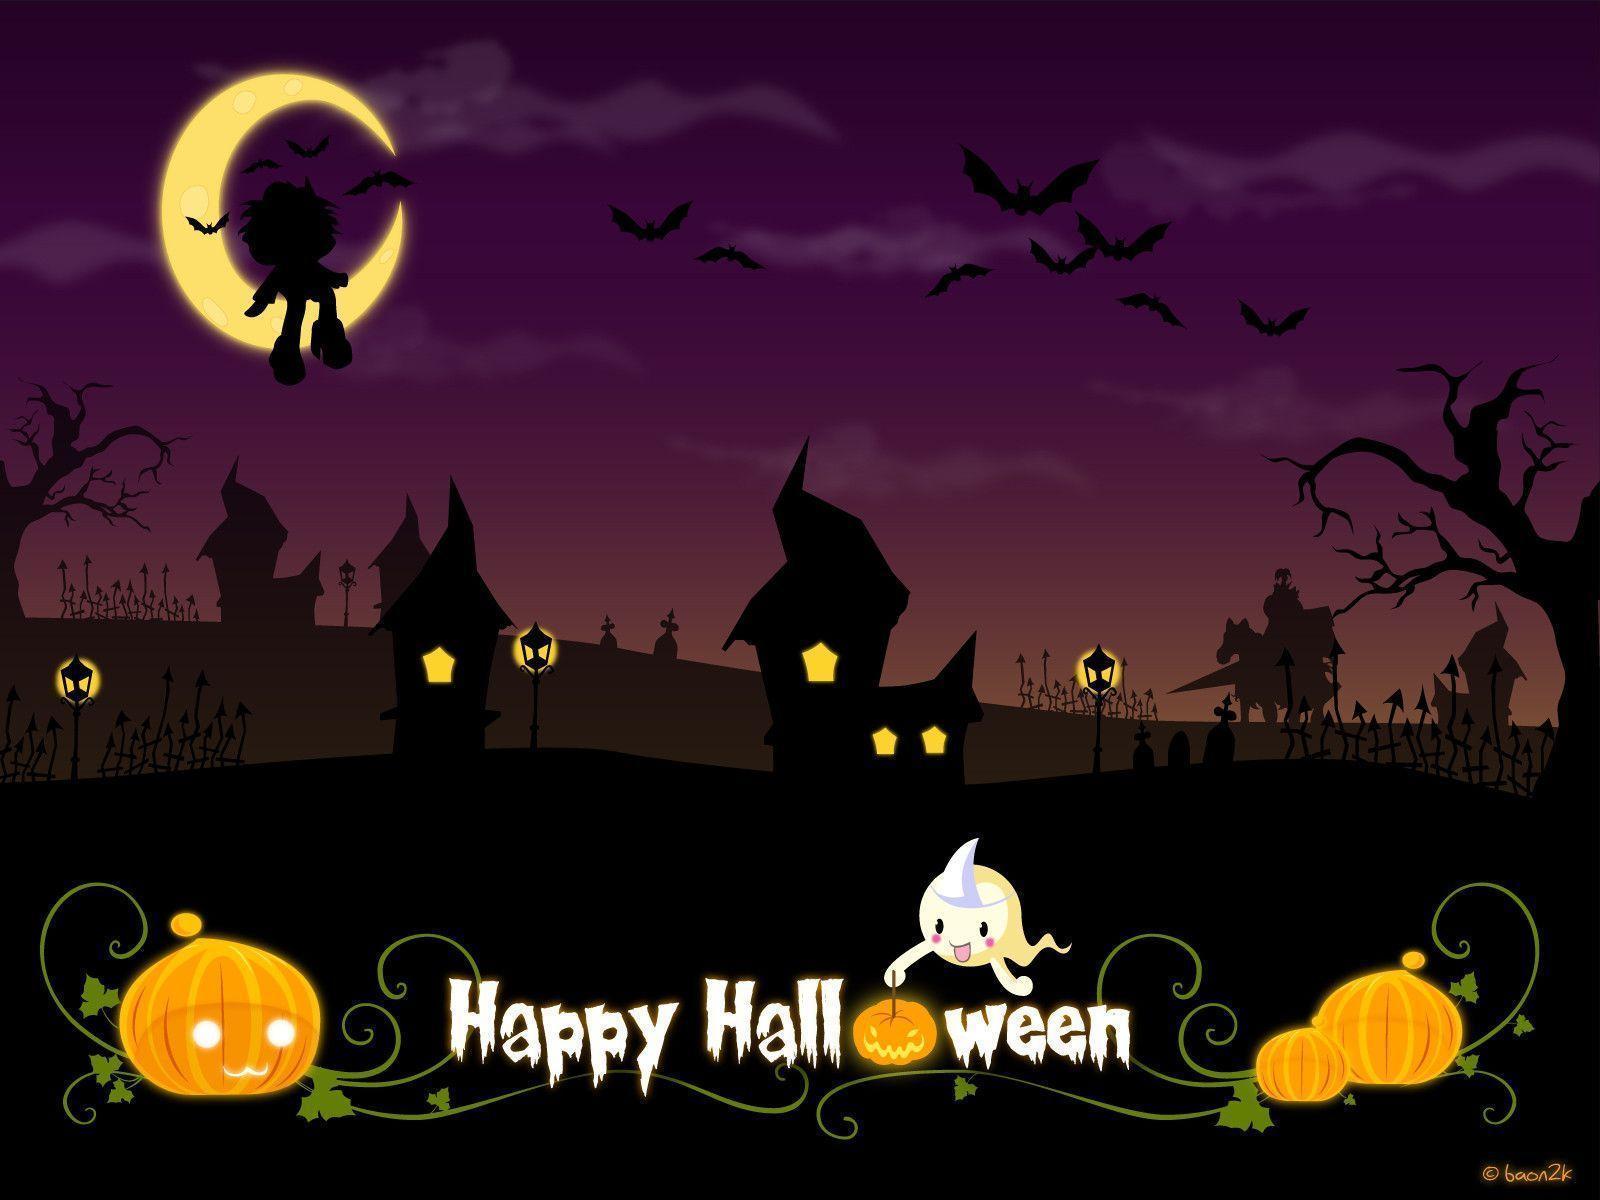 Scary Free Halloween Desktop Wallpaper. Best Design Options